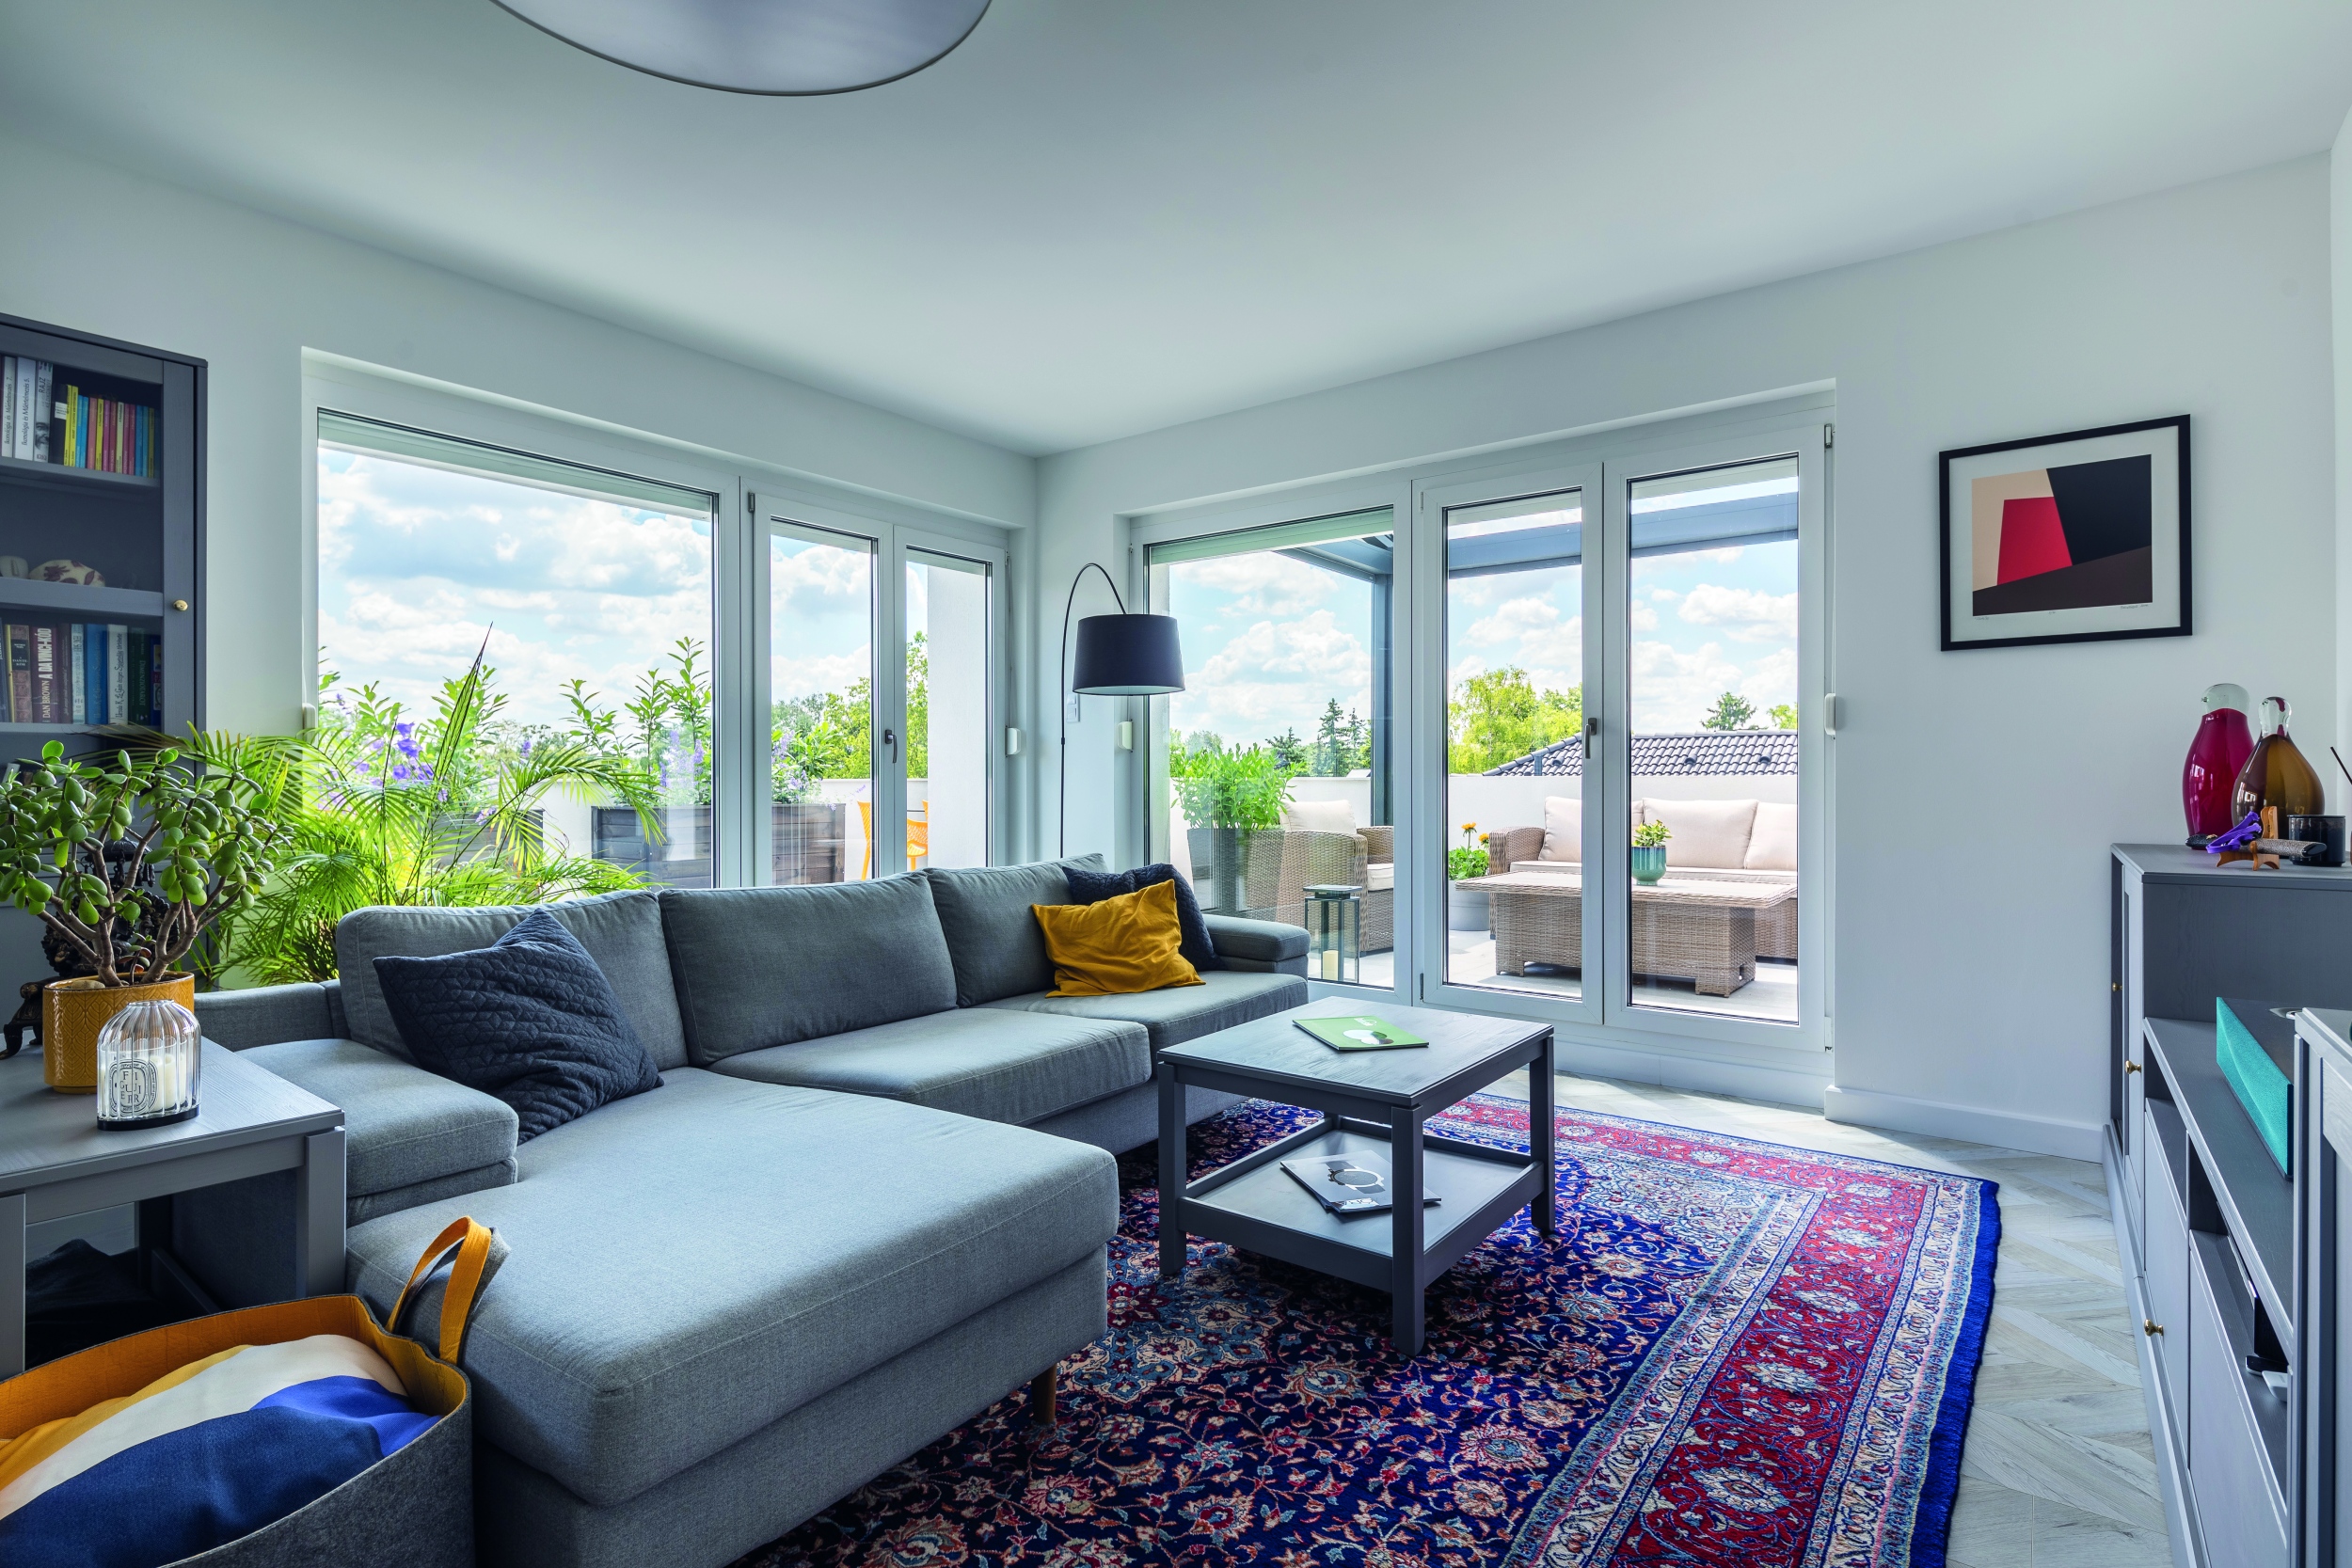 Körbejárható, L alakú  kanapé jelöli ki a nappali terét a többfunkciós, tágas térben,  ami impozáns méretű  üveg nyílászárókkal  nyit a kényelmes  terasz felé, miközben  páratlan kilátással  ajándékozza meg  a nappalit